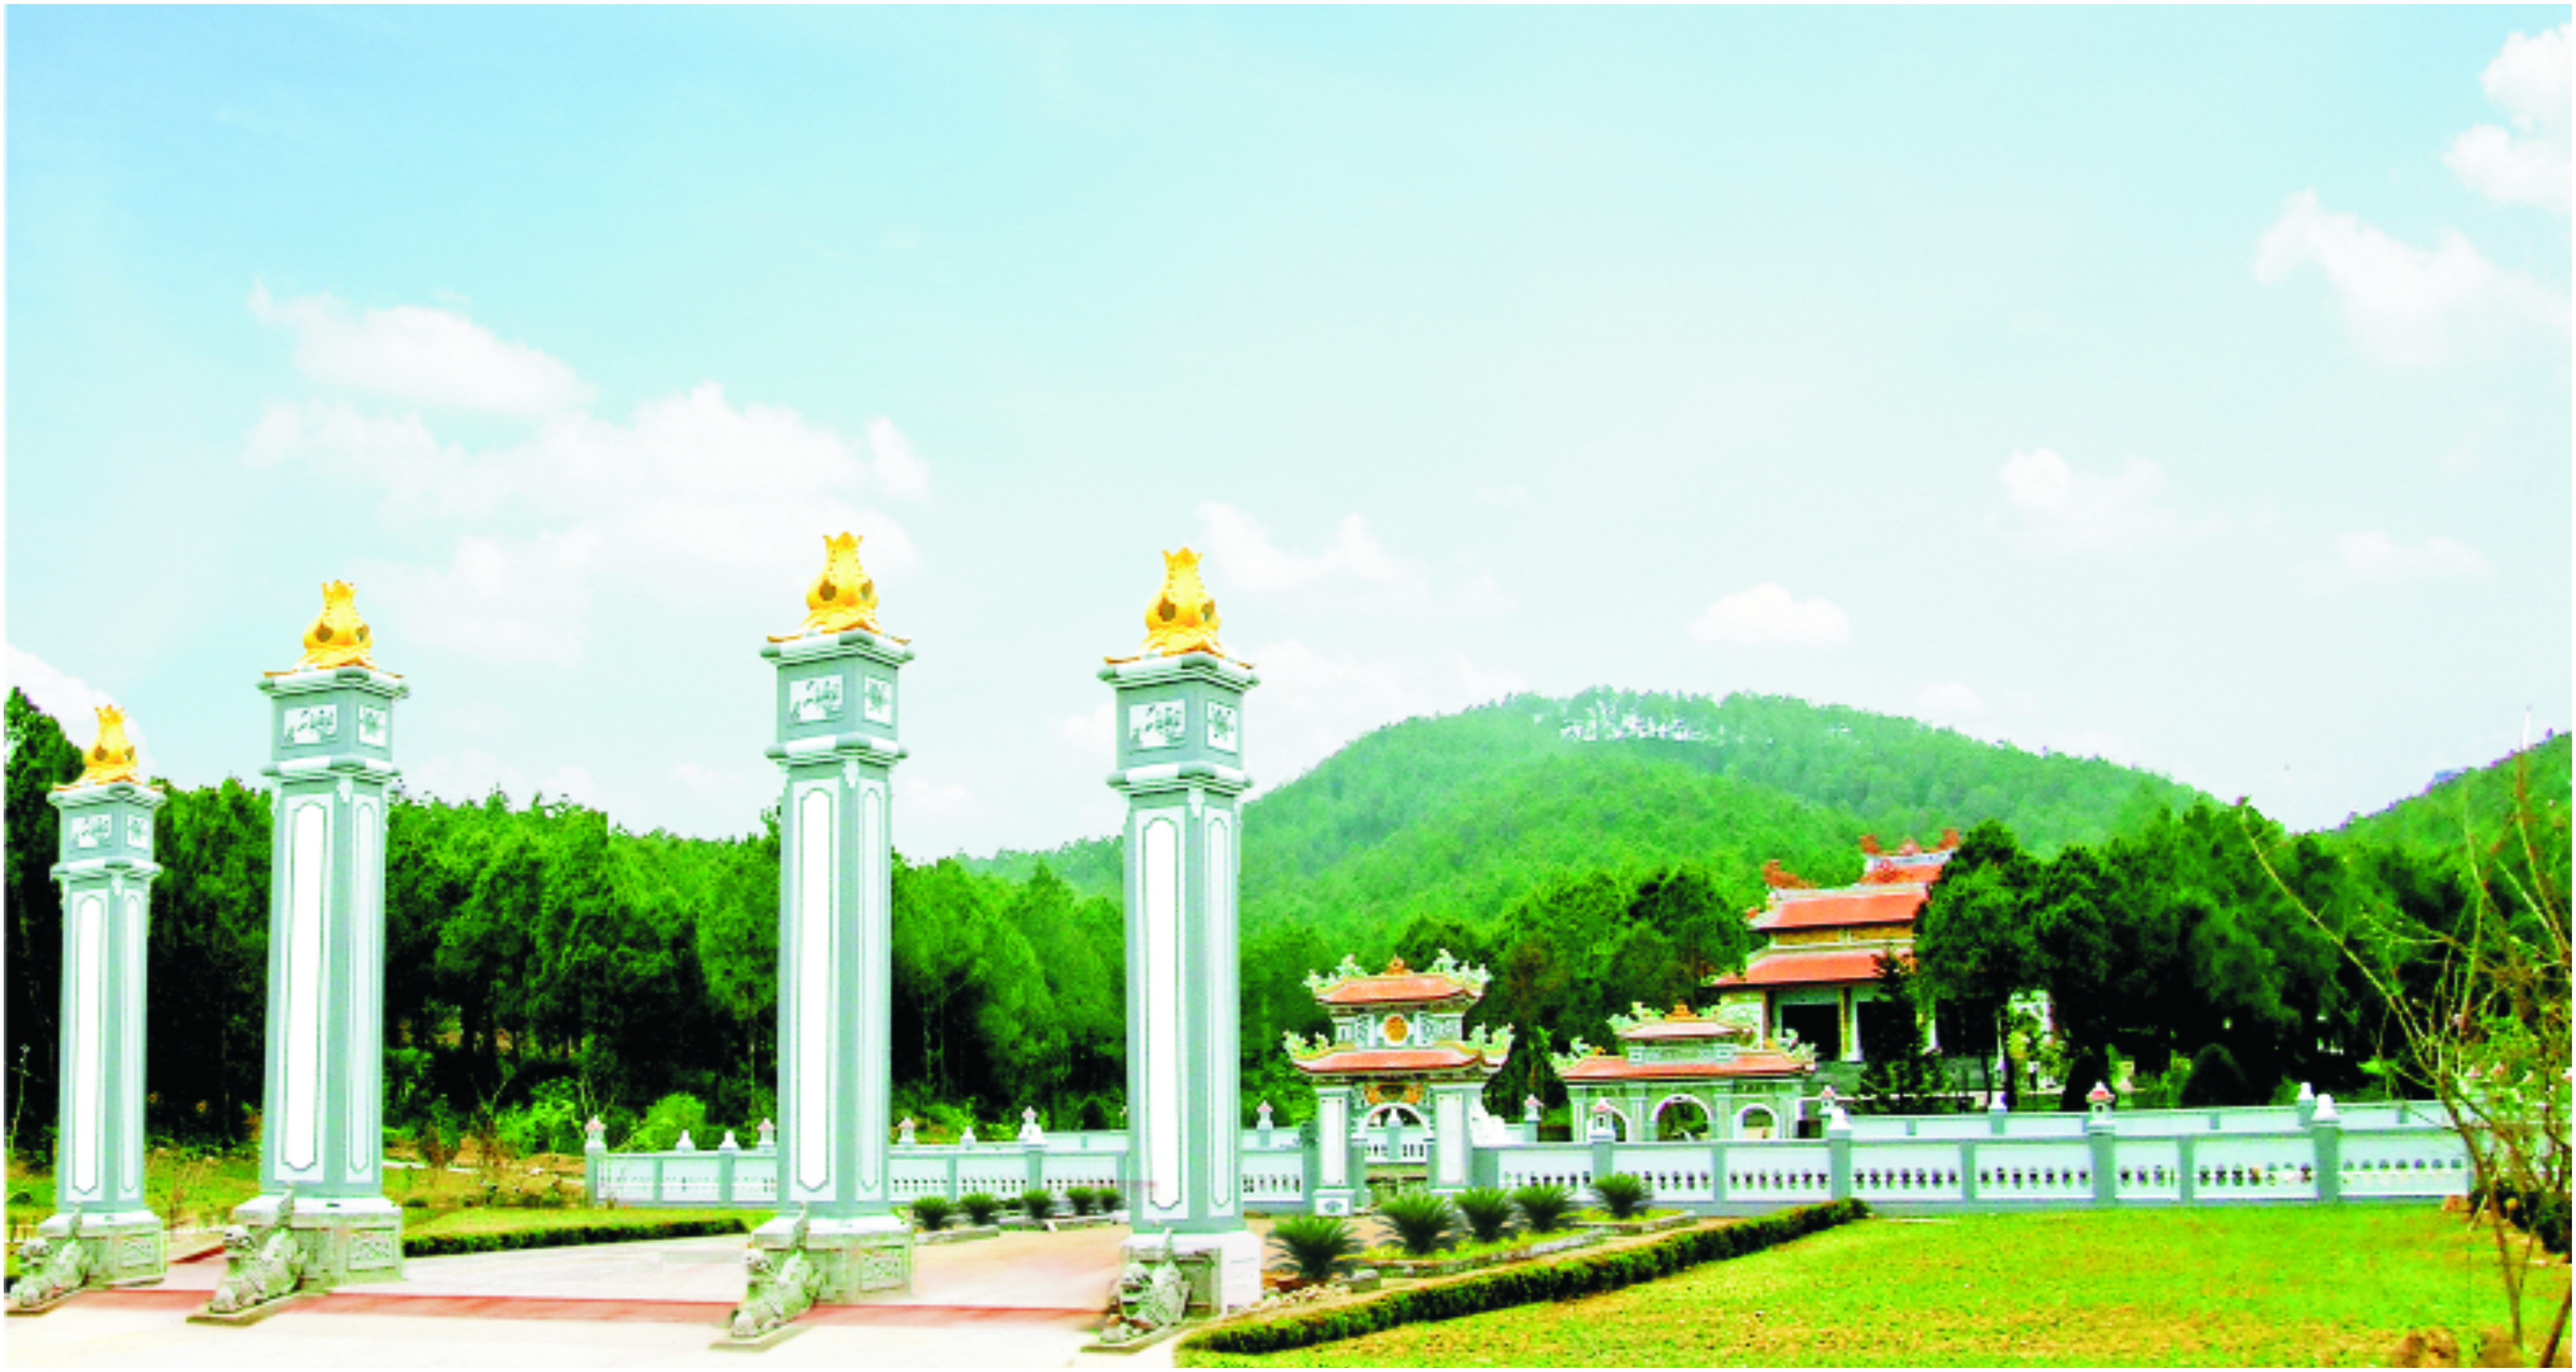 Trung tâm Văn hóa Huyền Trân - Địa danh Văn hoá lịch sử, tâm linh ở Cố đô  Huế.